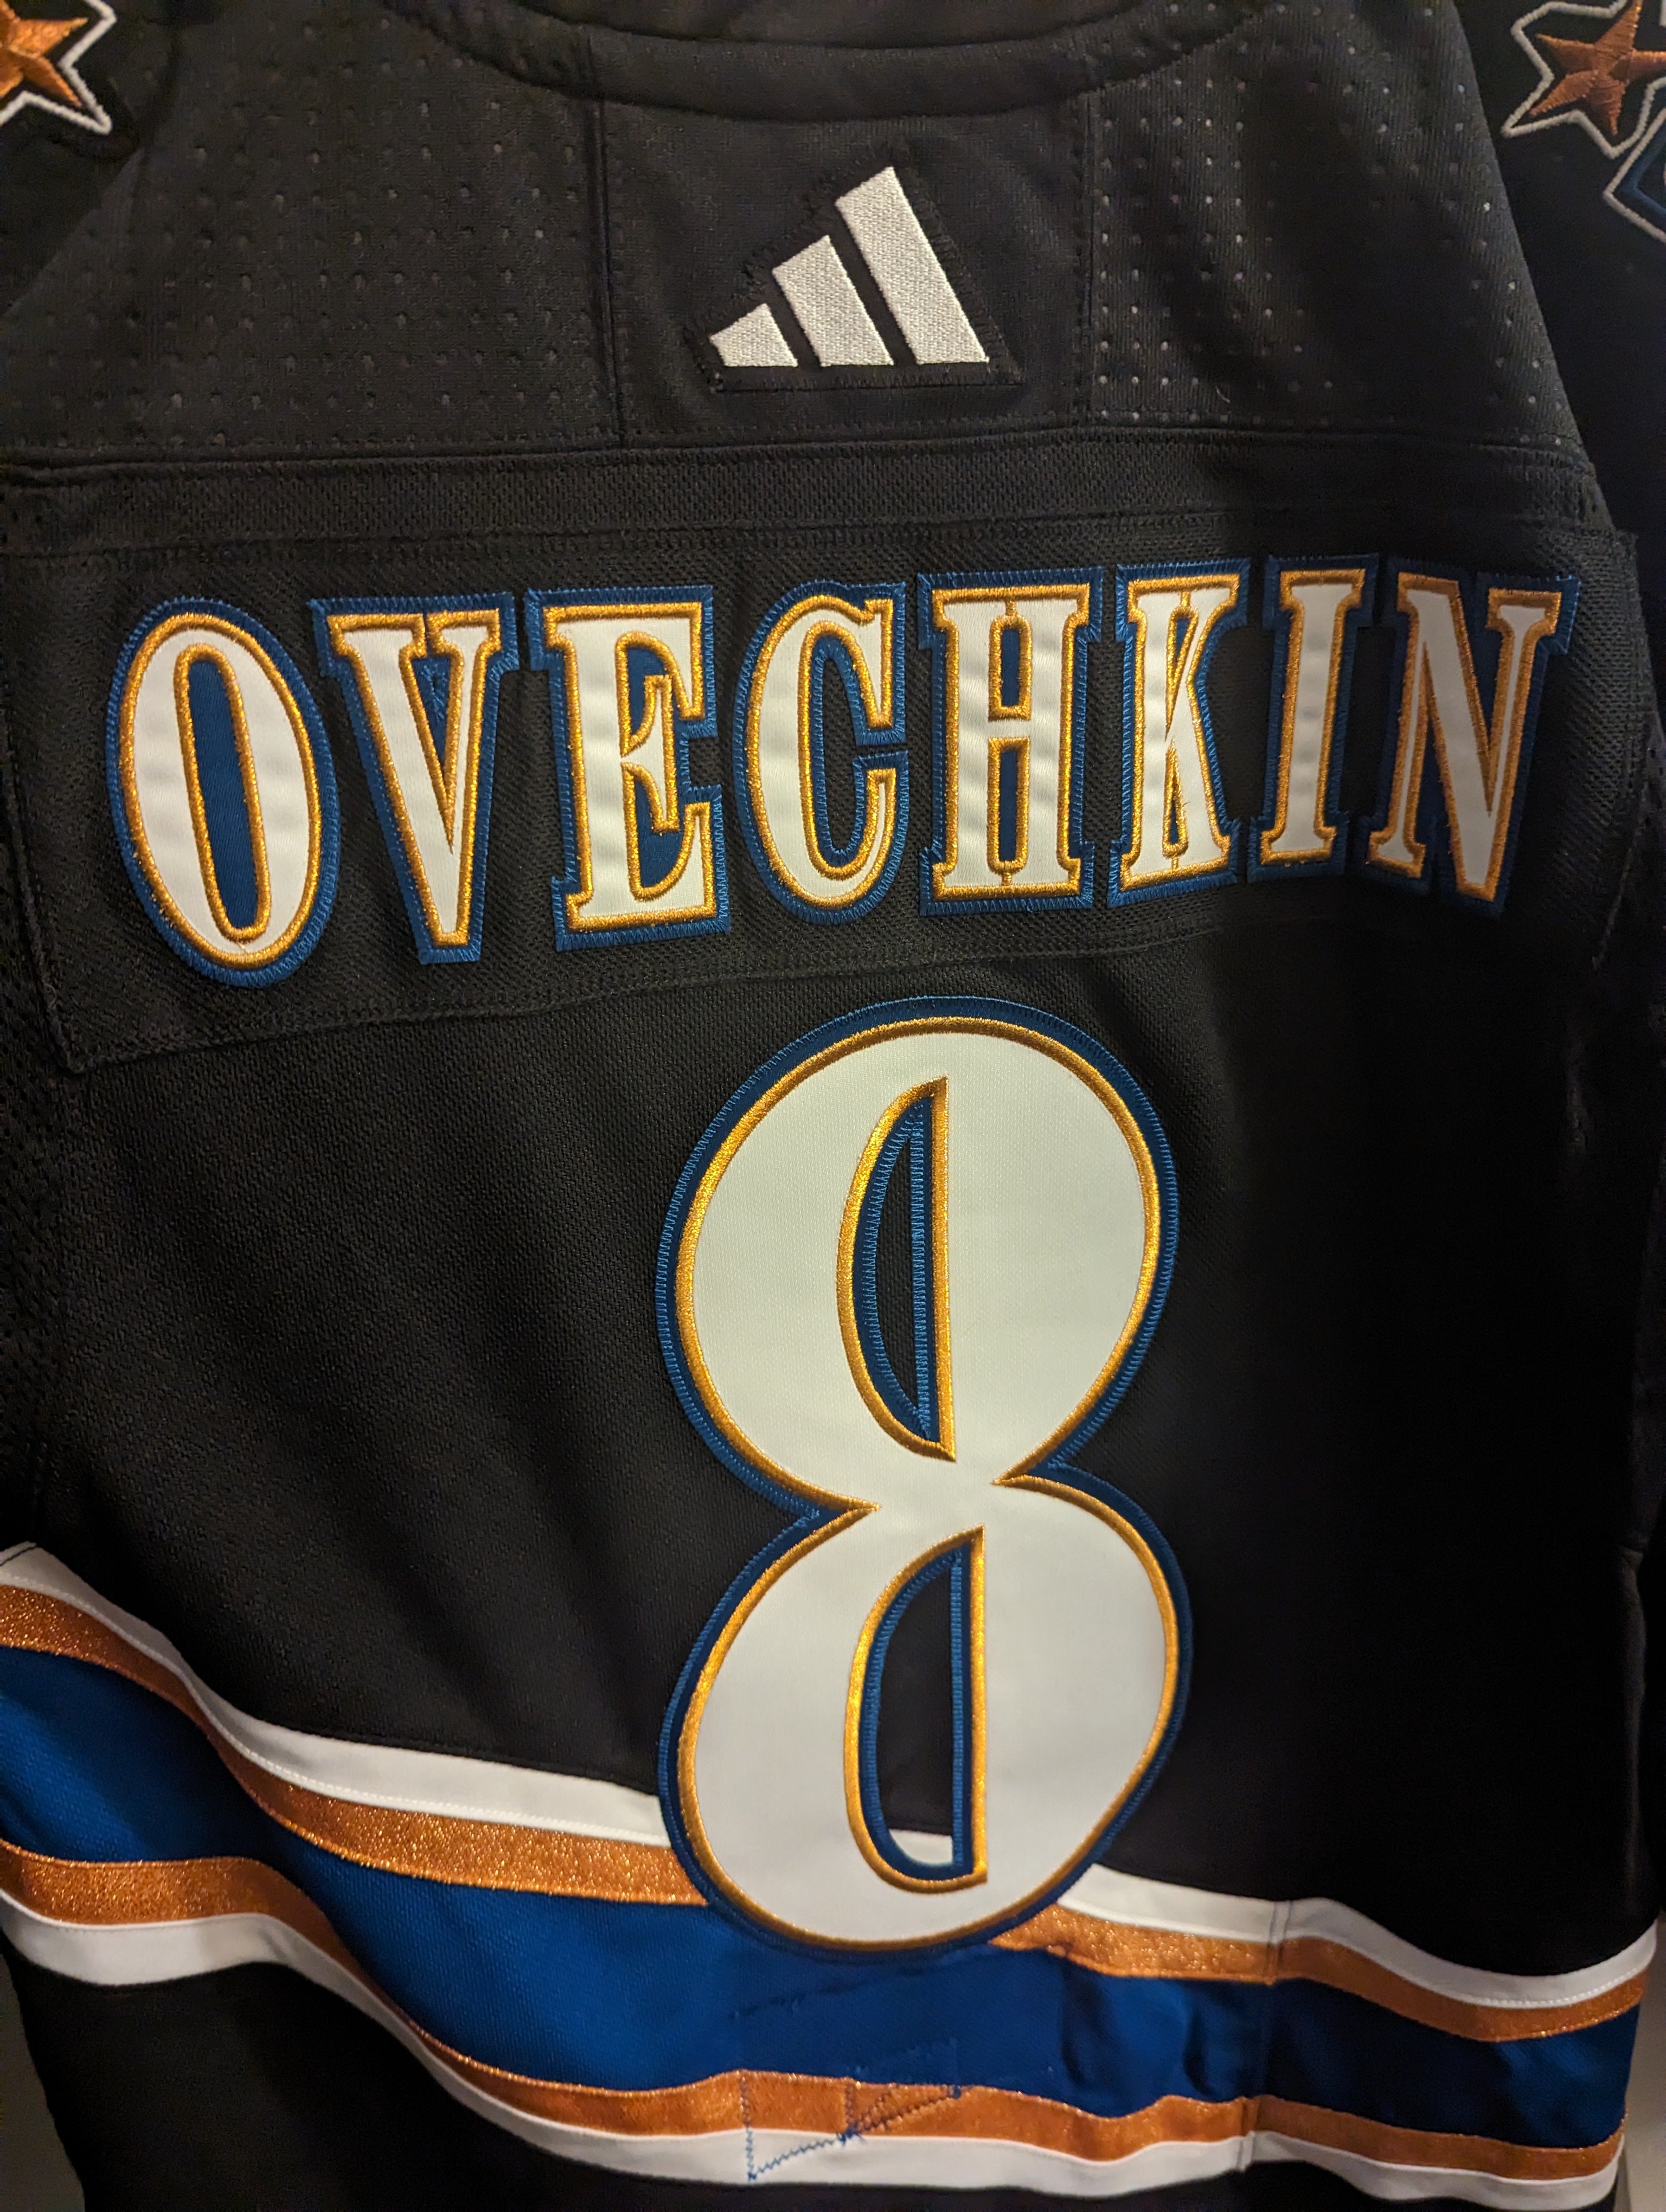 Washington Capitals Ovechkin Reverse Retro 2.0 Authentic Hockey Jersey Sz  50 NWT